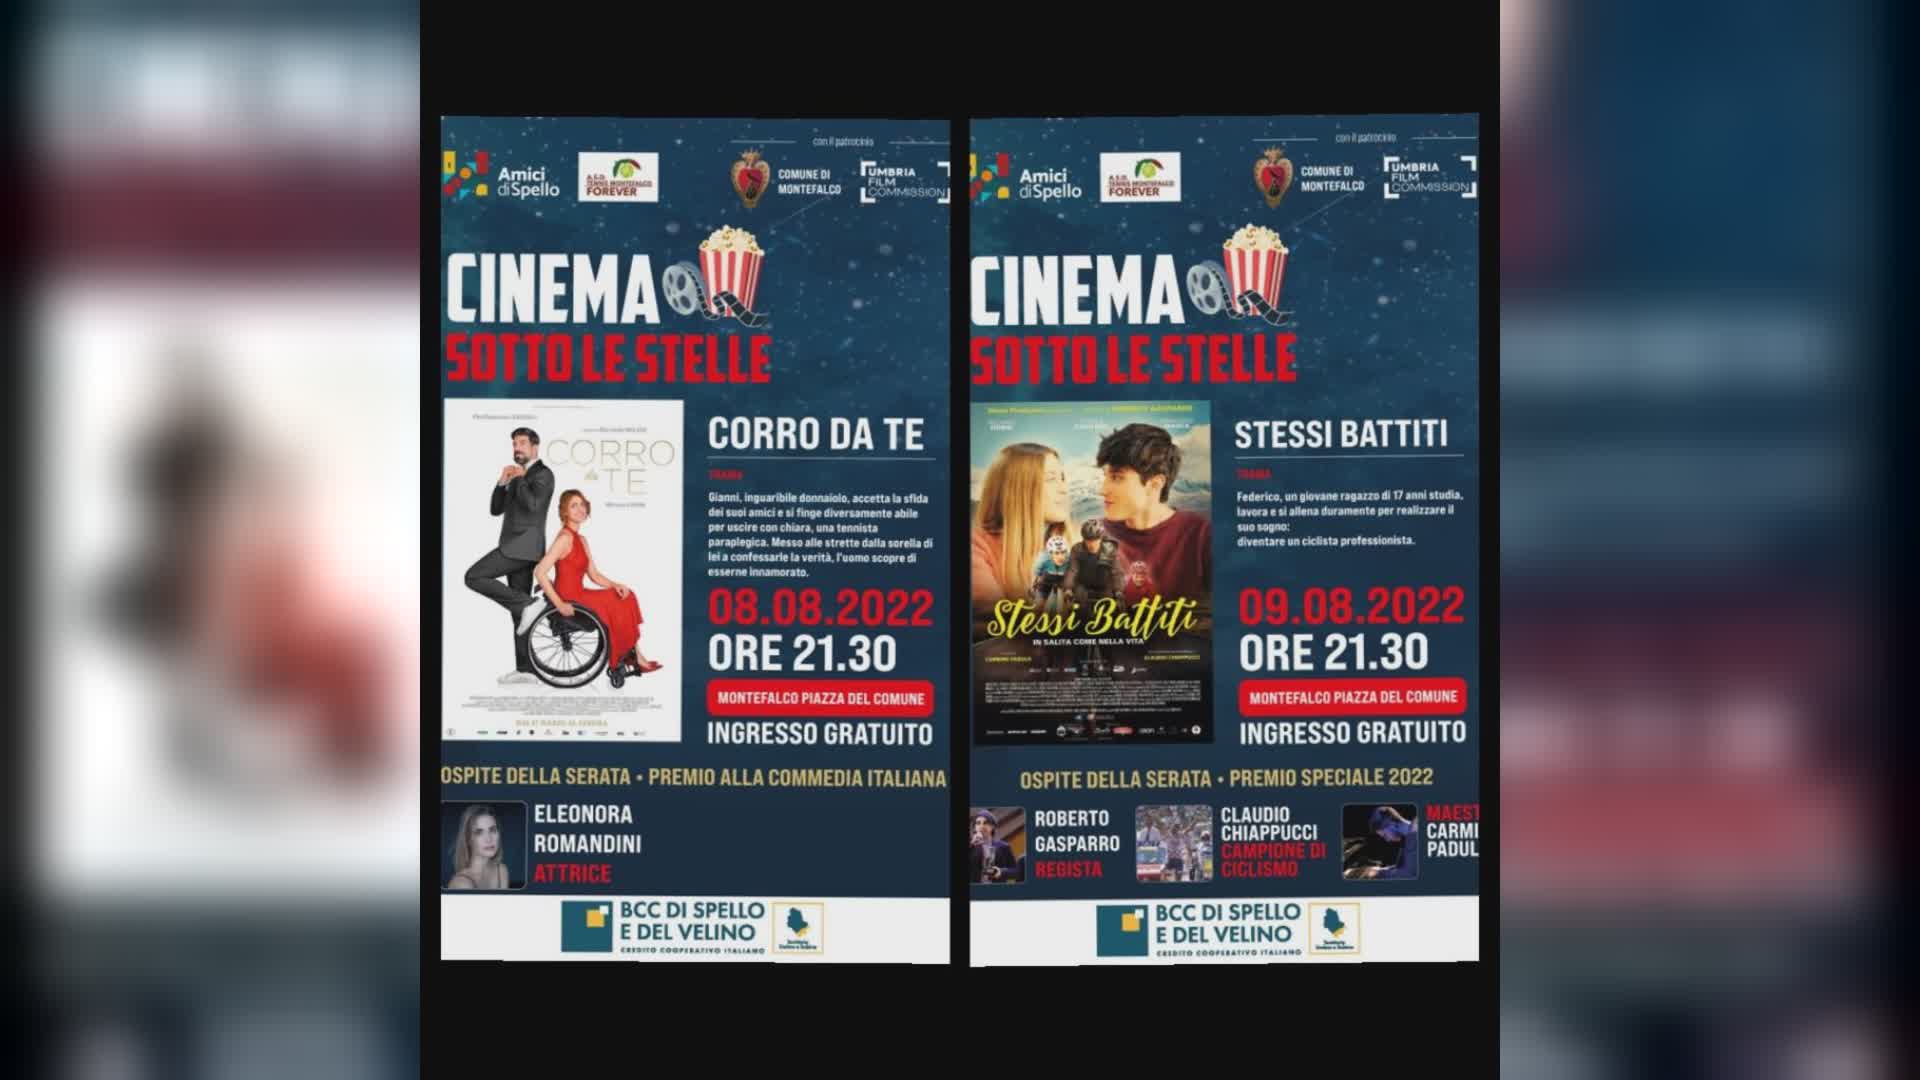 Torna da stasera "Cinema sotto le stelle premio a Commedia italiana"